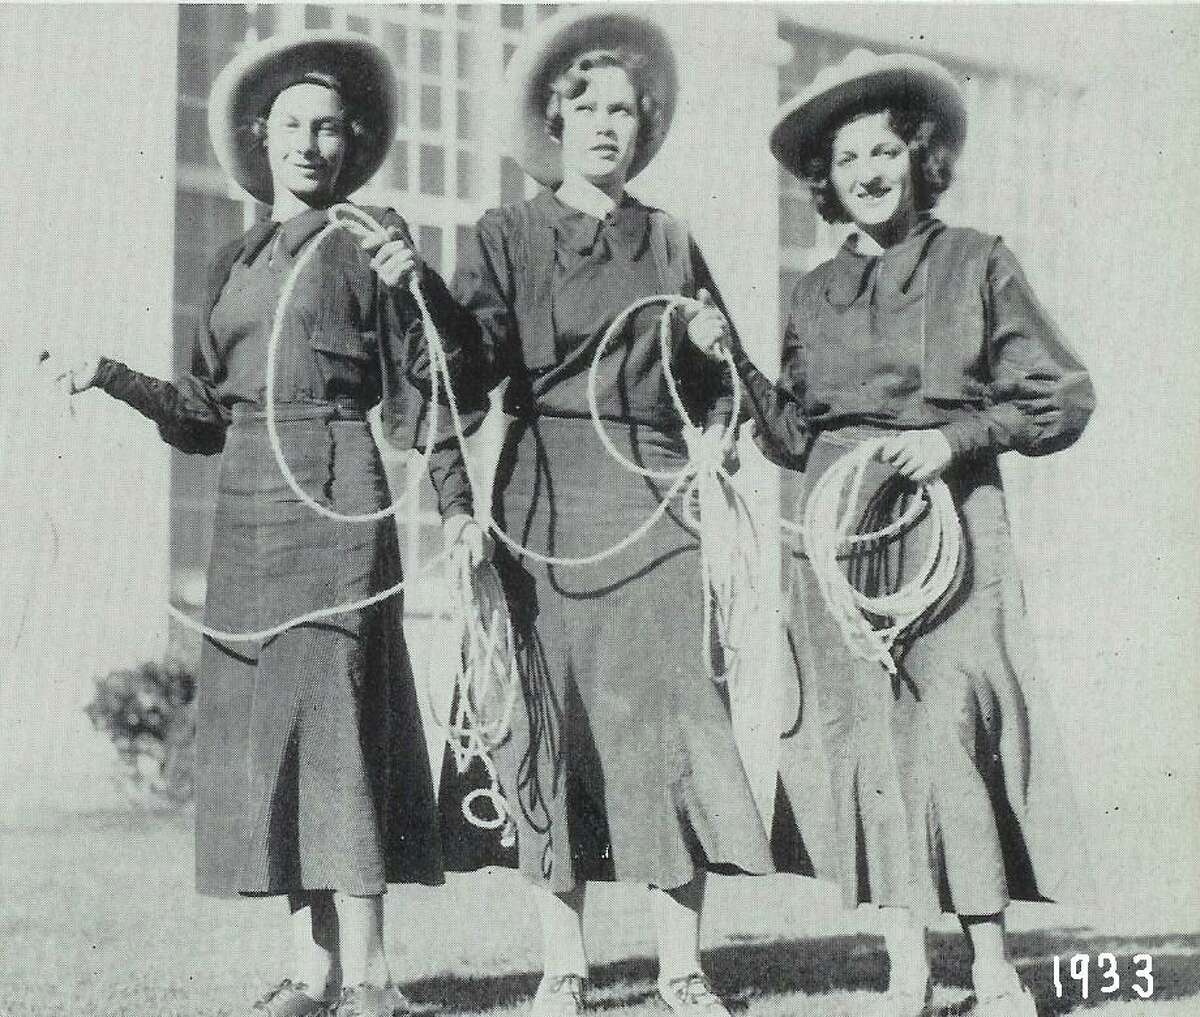 Earliest Lasso photo (girls unknown), 1933